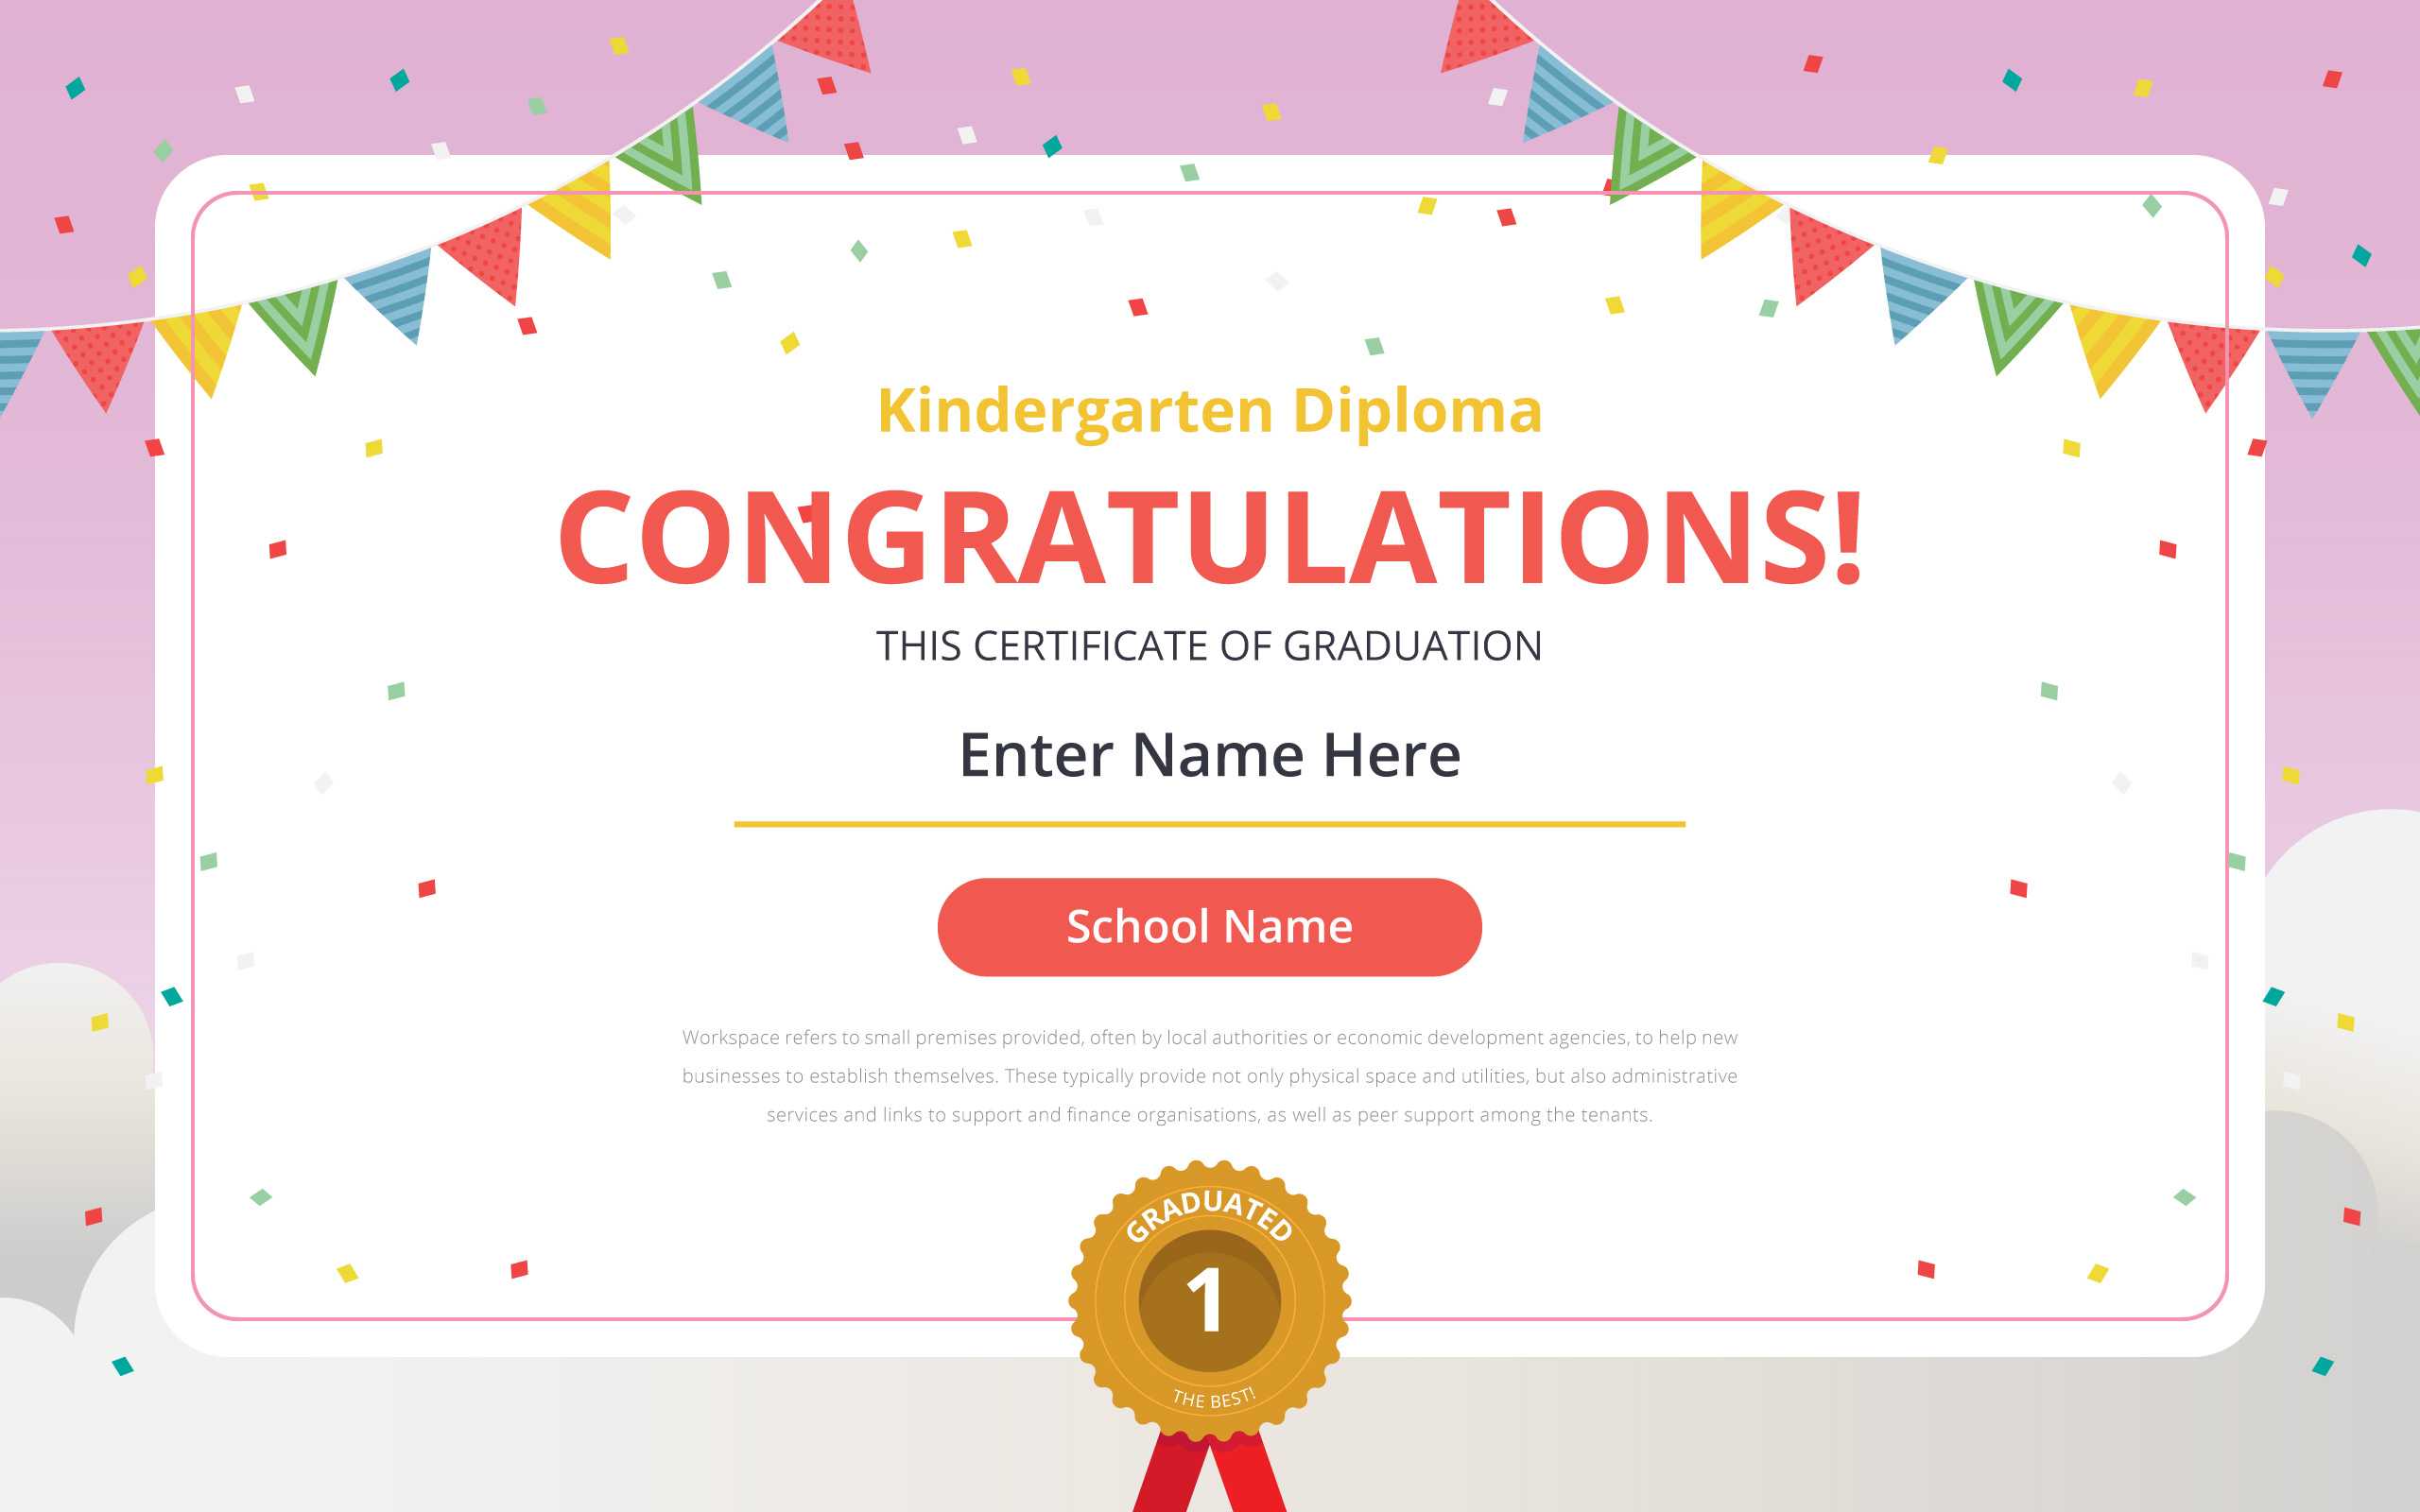 Kindergarten Diploma Certificate Template – Download Free With Regard To Preschool Graduation Certificate Template Free